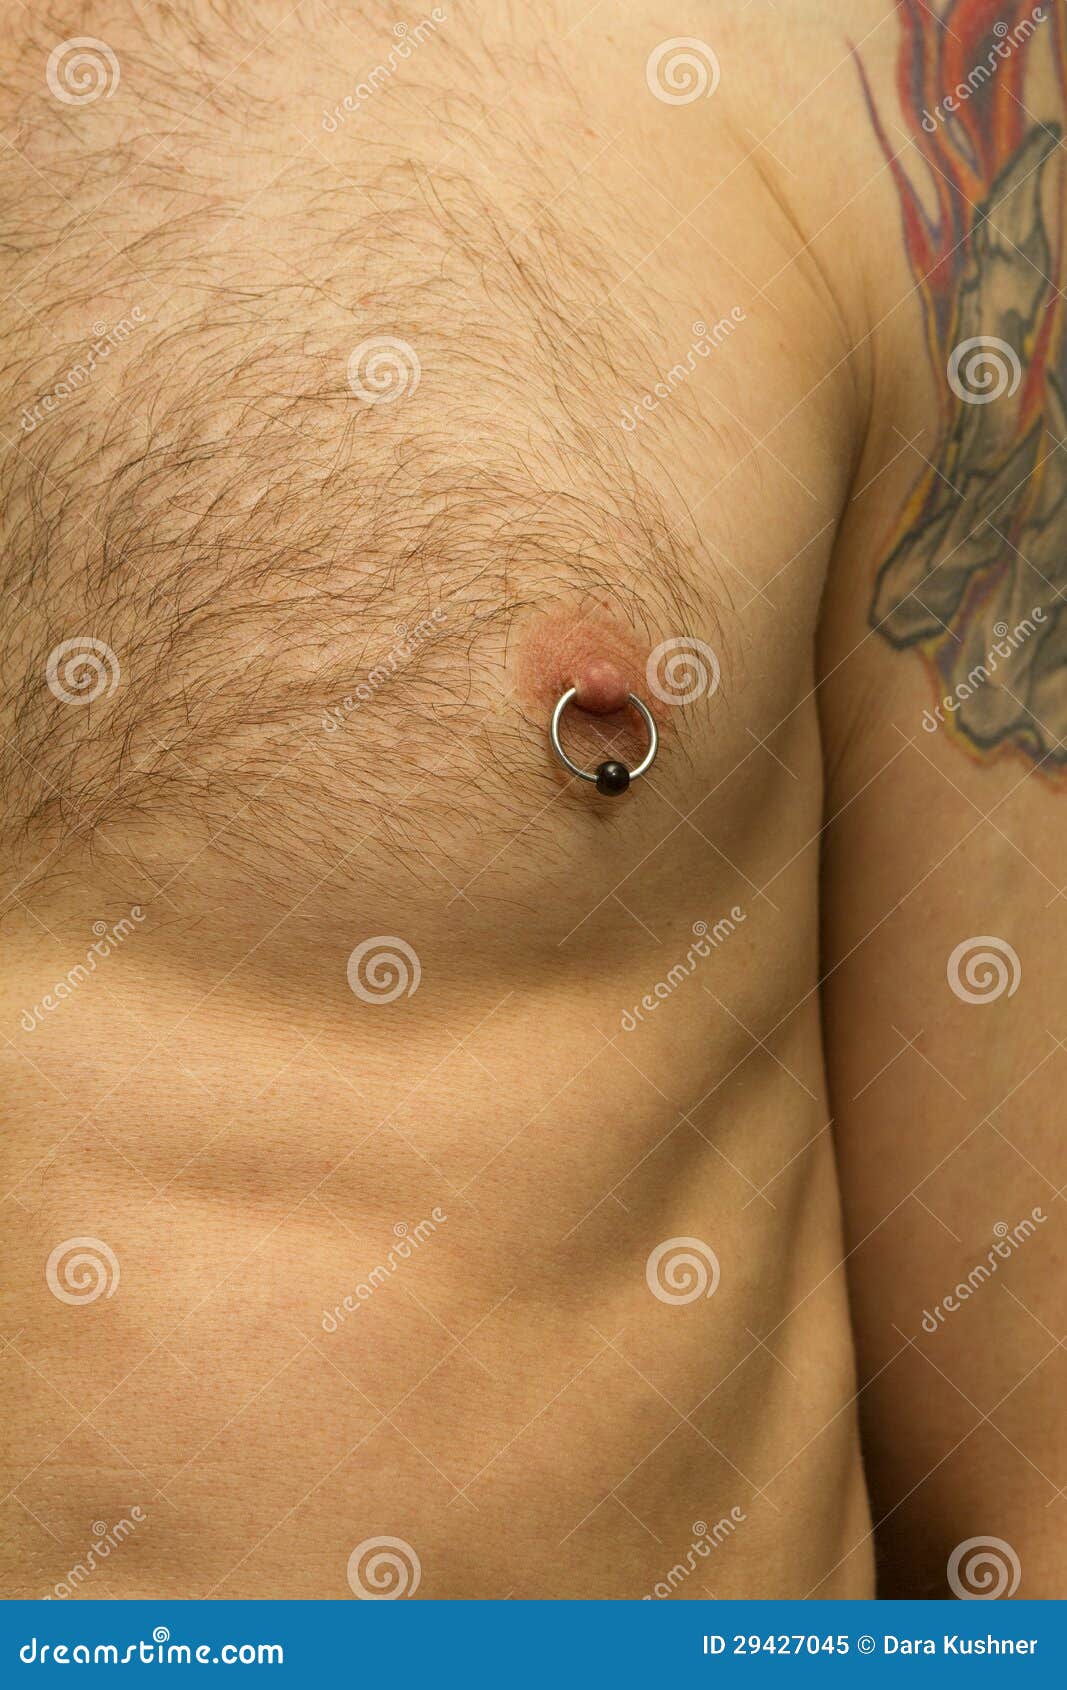 пирсинг груди у мужчин фото 12